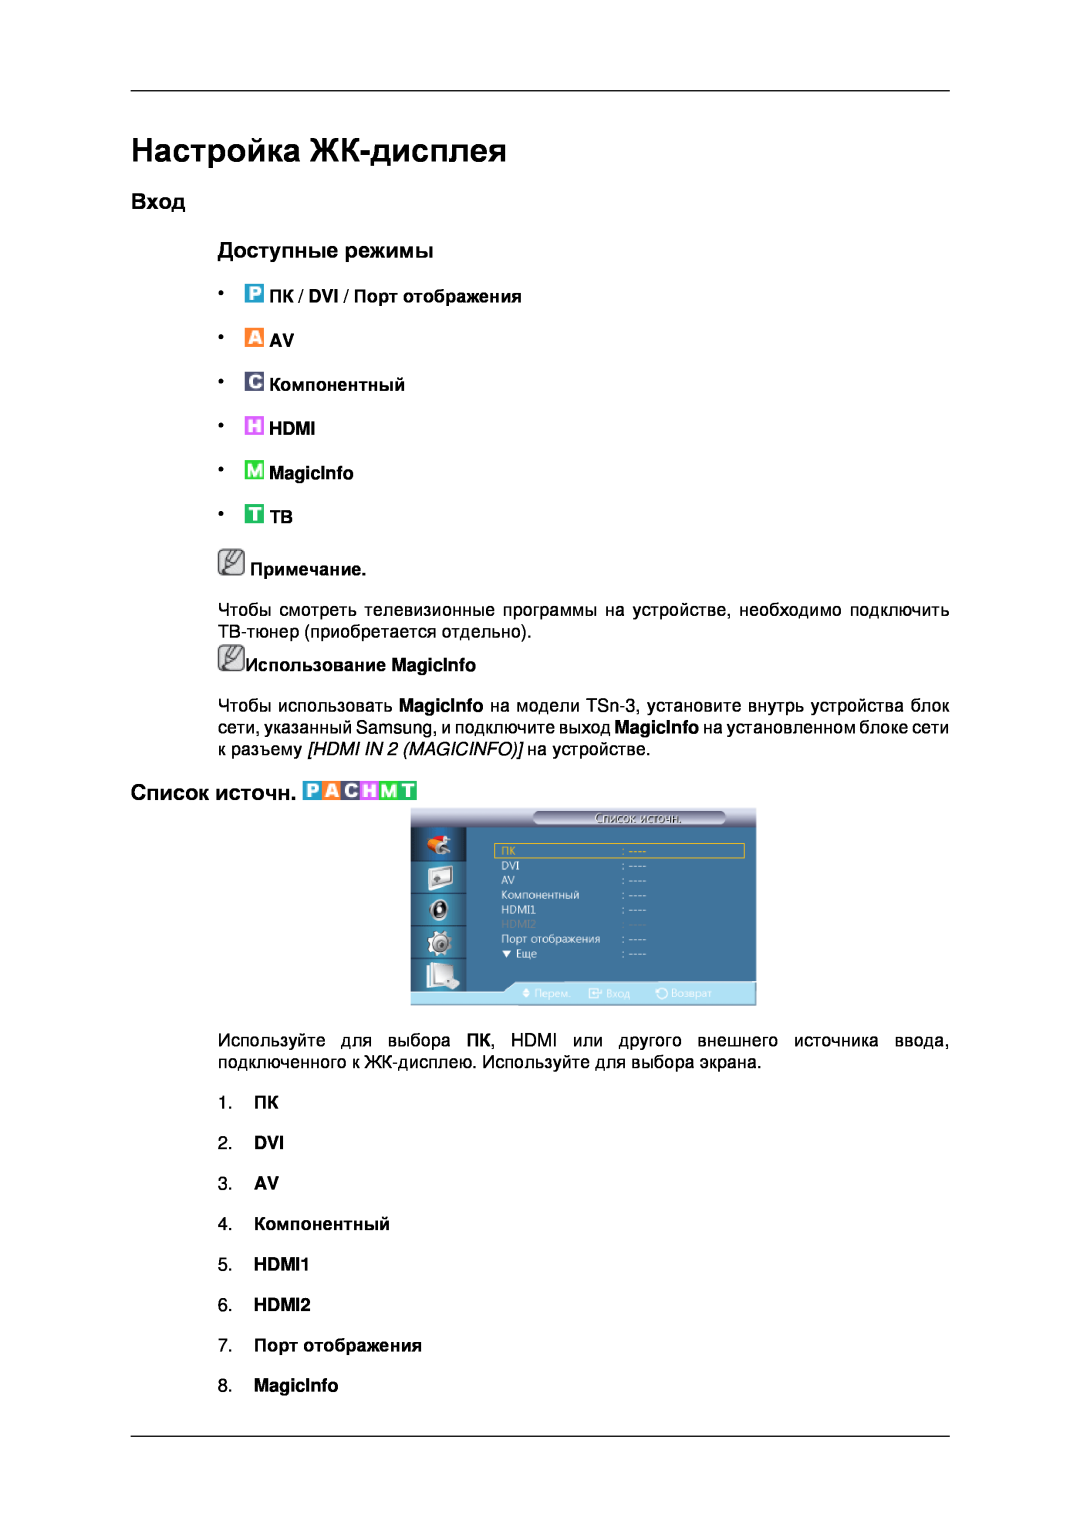 Samsung LH32CRTMBC/EN manual Настройка ЖК-дисплея, Вход Доступные режимы, Список источн, 7. Порт отображения 8. MagicInfo 